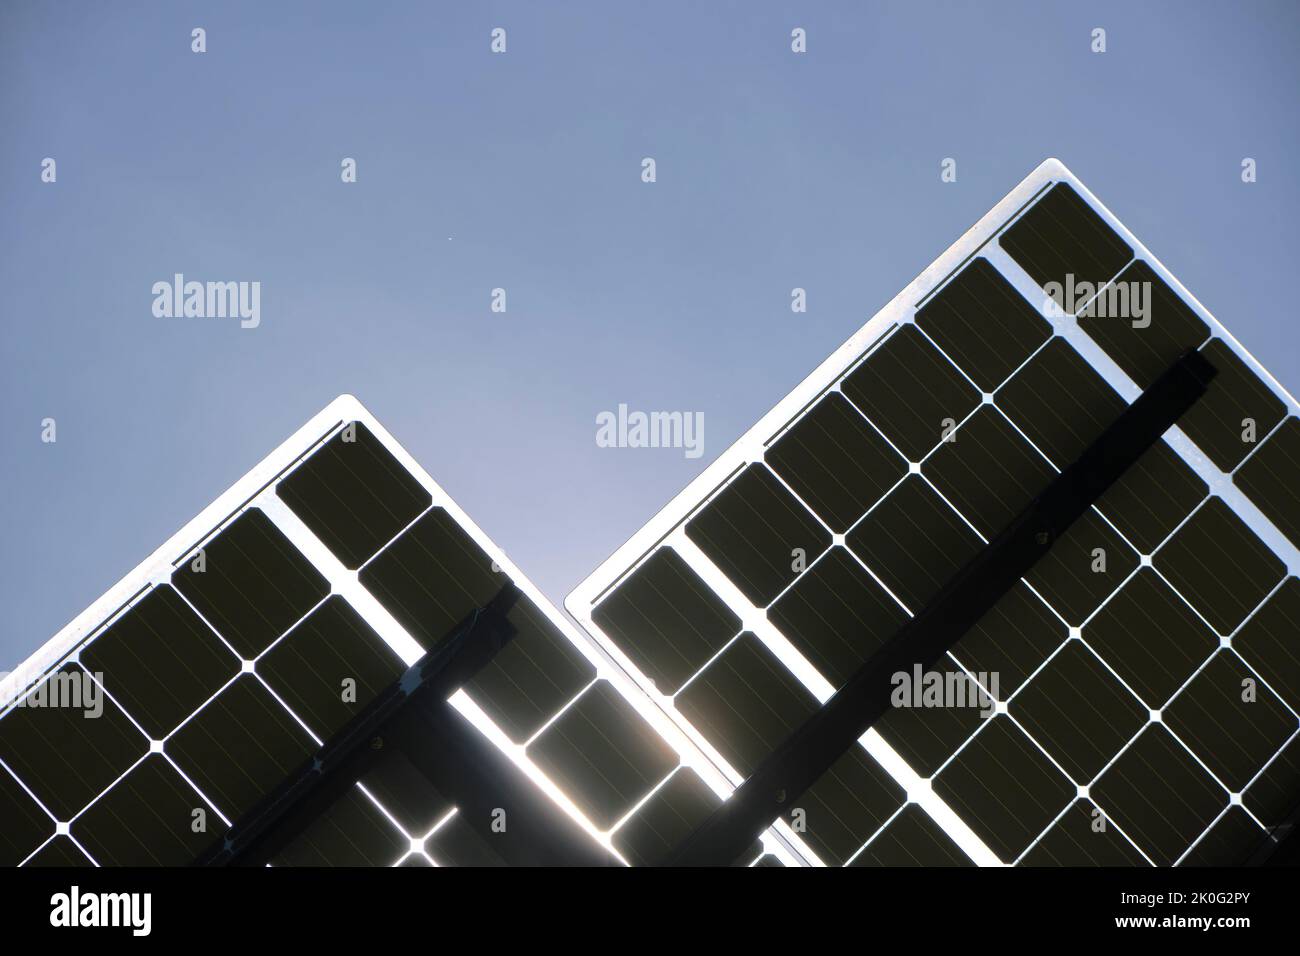 Pannelli solari fotovoltaici montati su telaio metallico per la produzione di energia elettrica ecologica pulita. Elettricità rinnovabile con concetto di emissioni zero Foto Stock